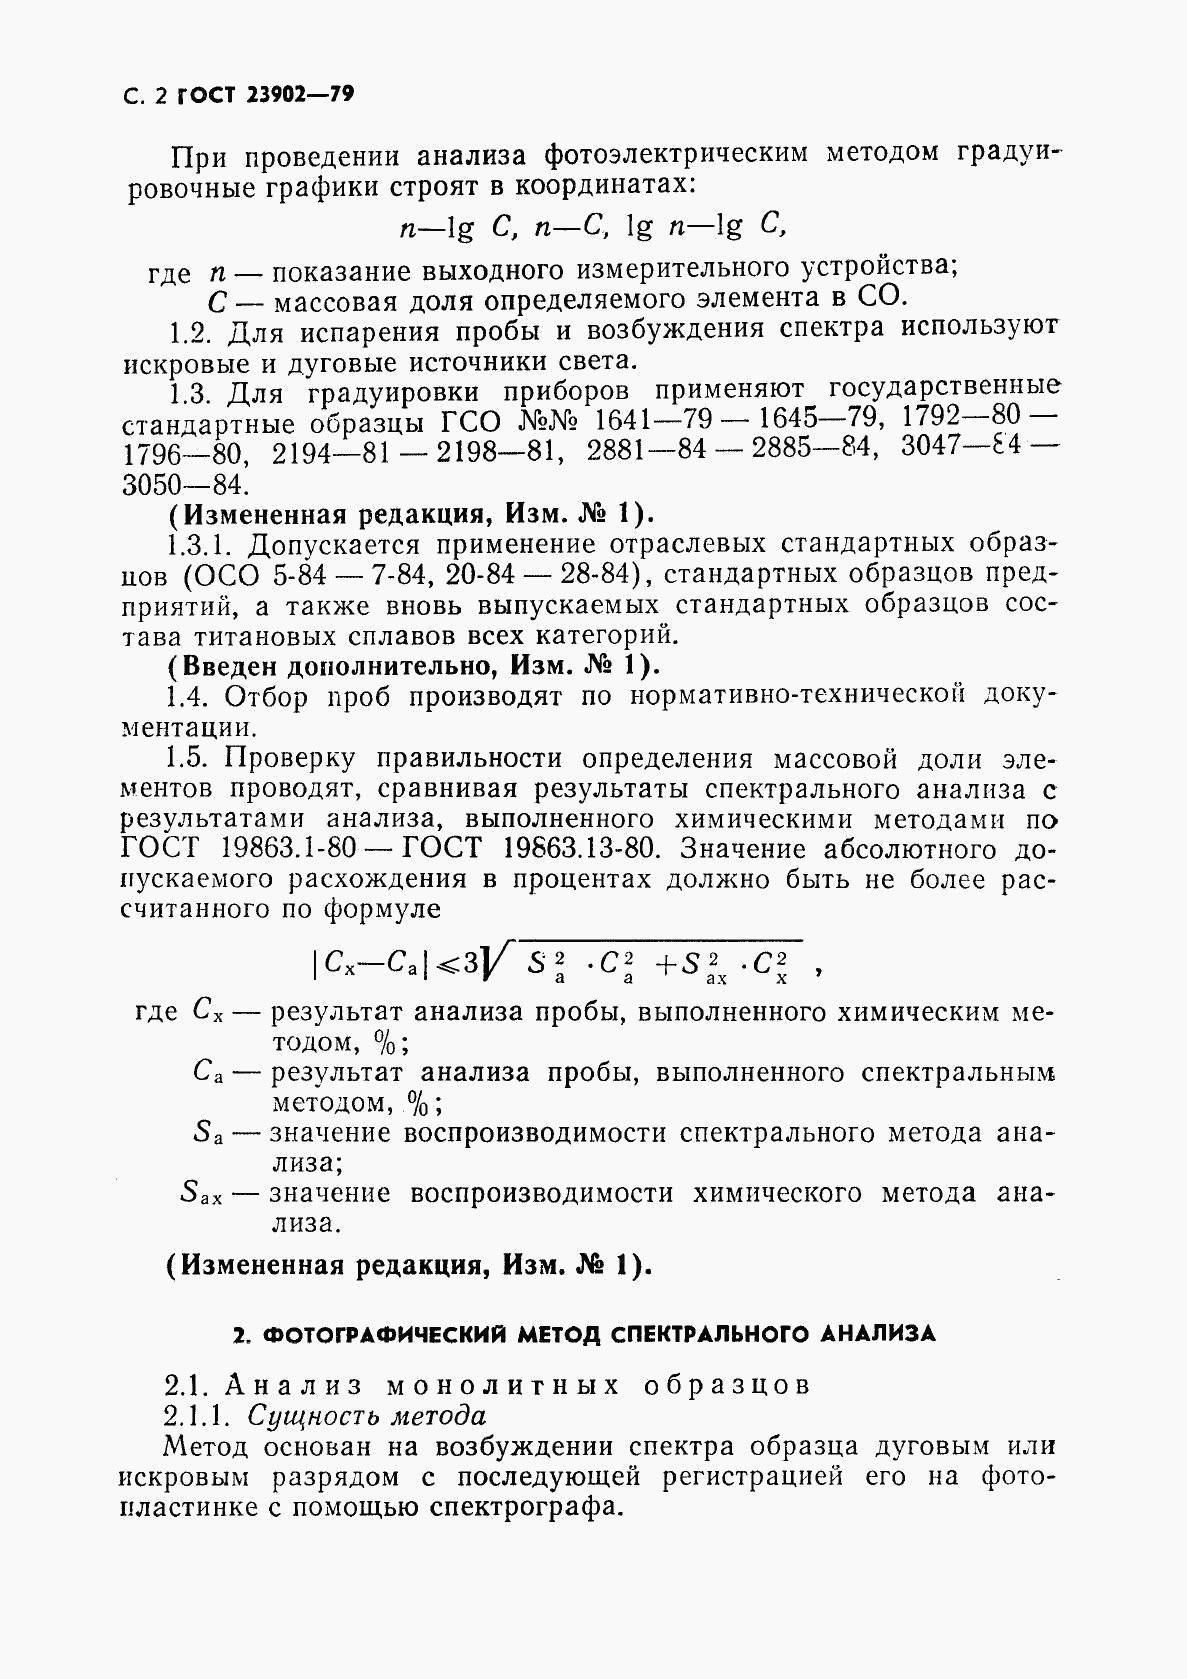 ГОСТ 23902-79, страница 3